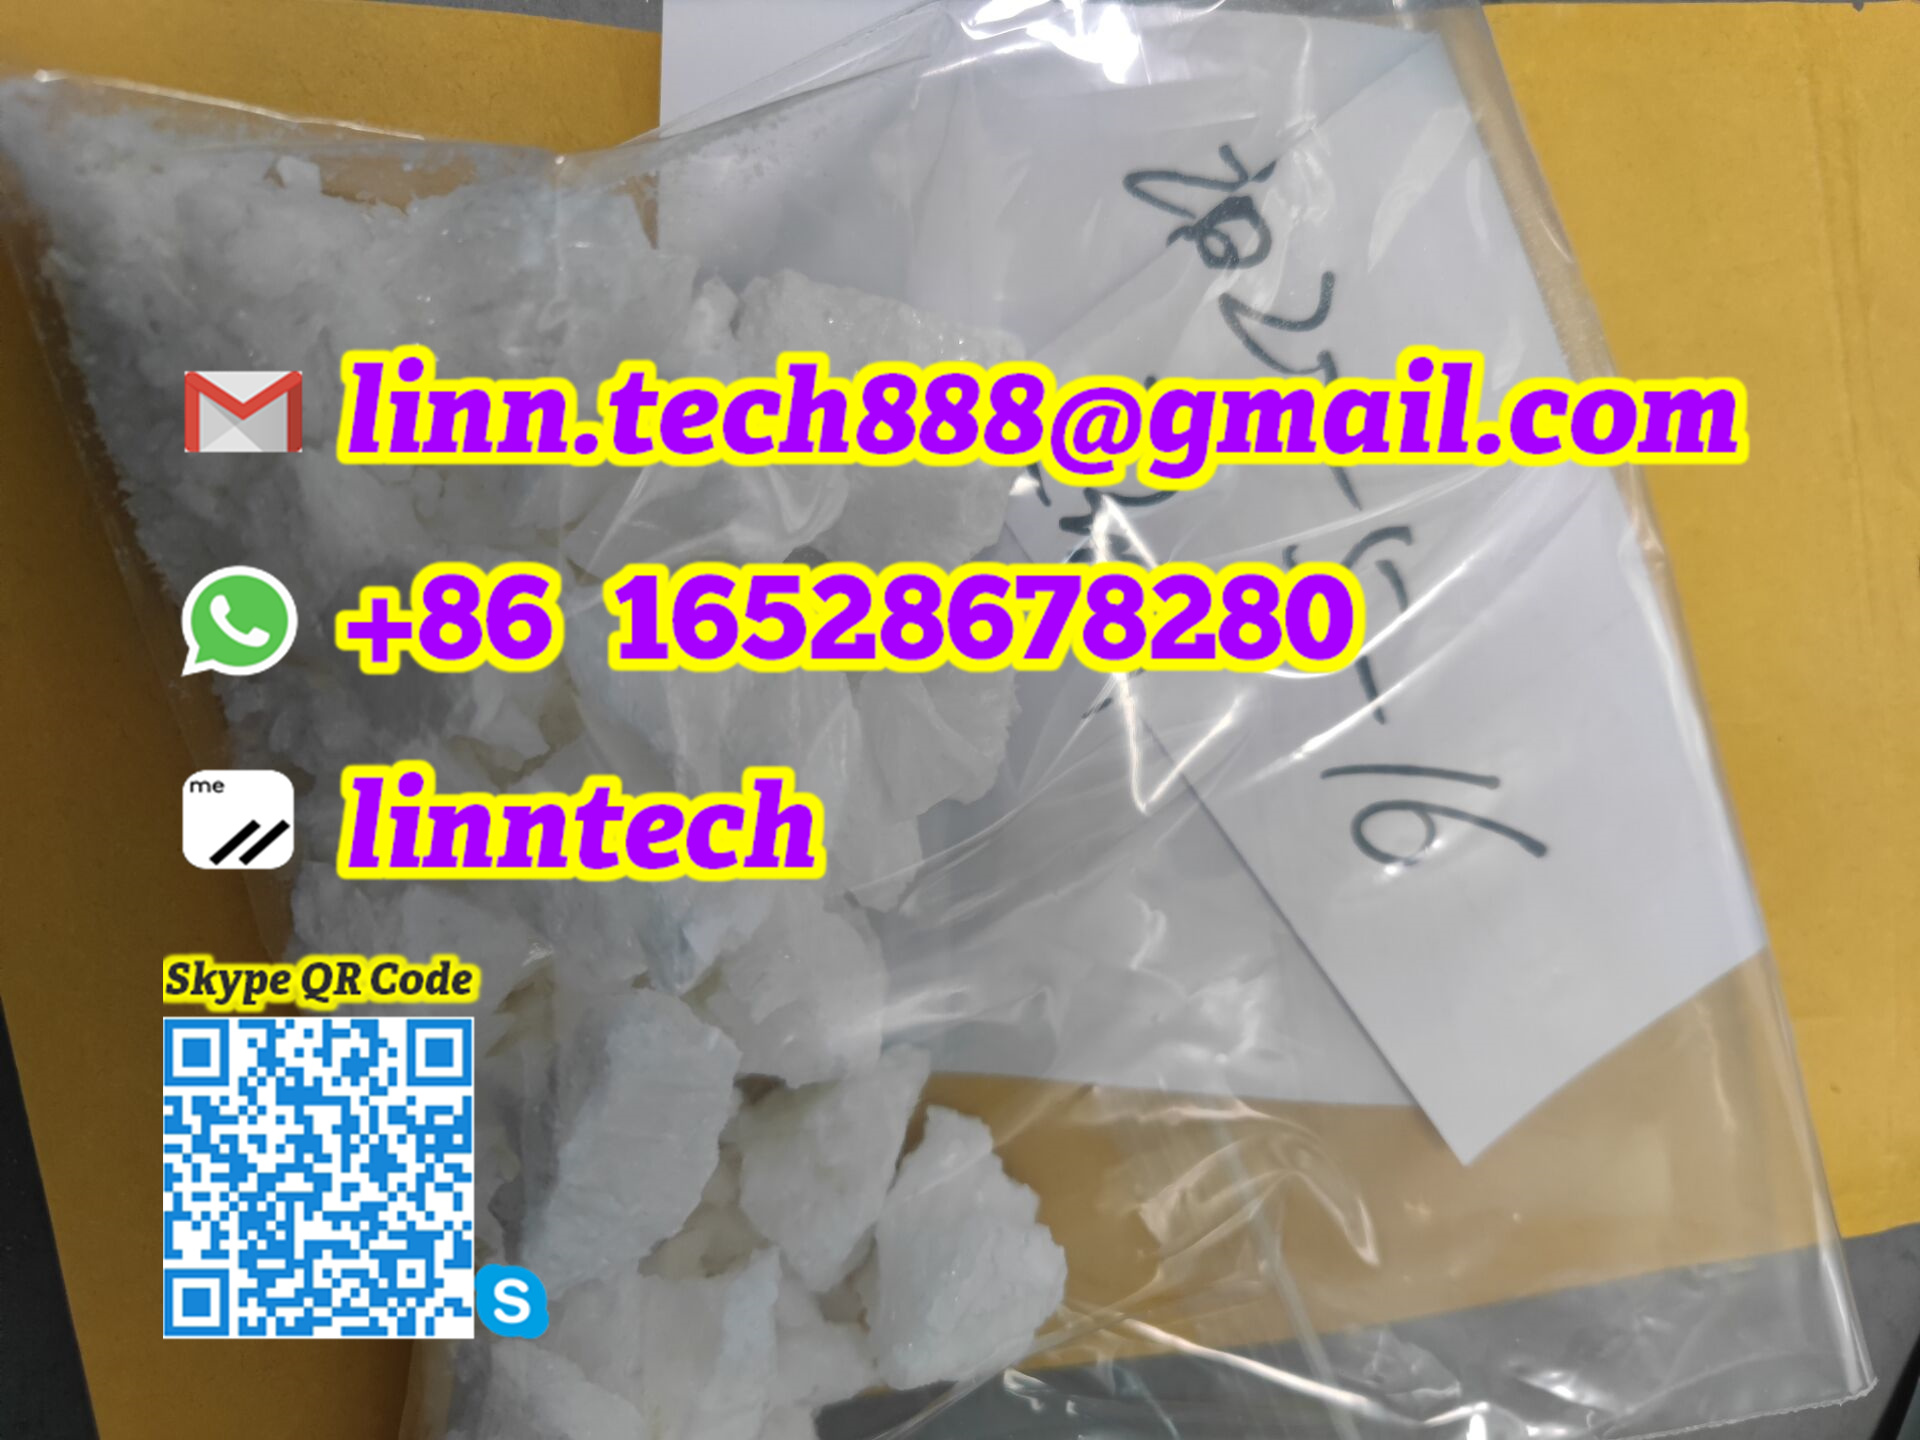 Buy new Apihp Butylone BK-2022 bkebdp bkmdma Flak Ethylone white crystal  - photo